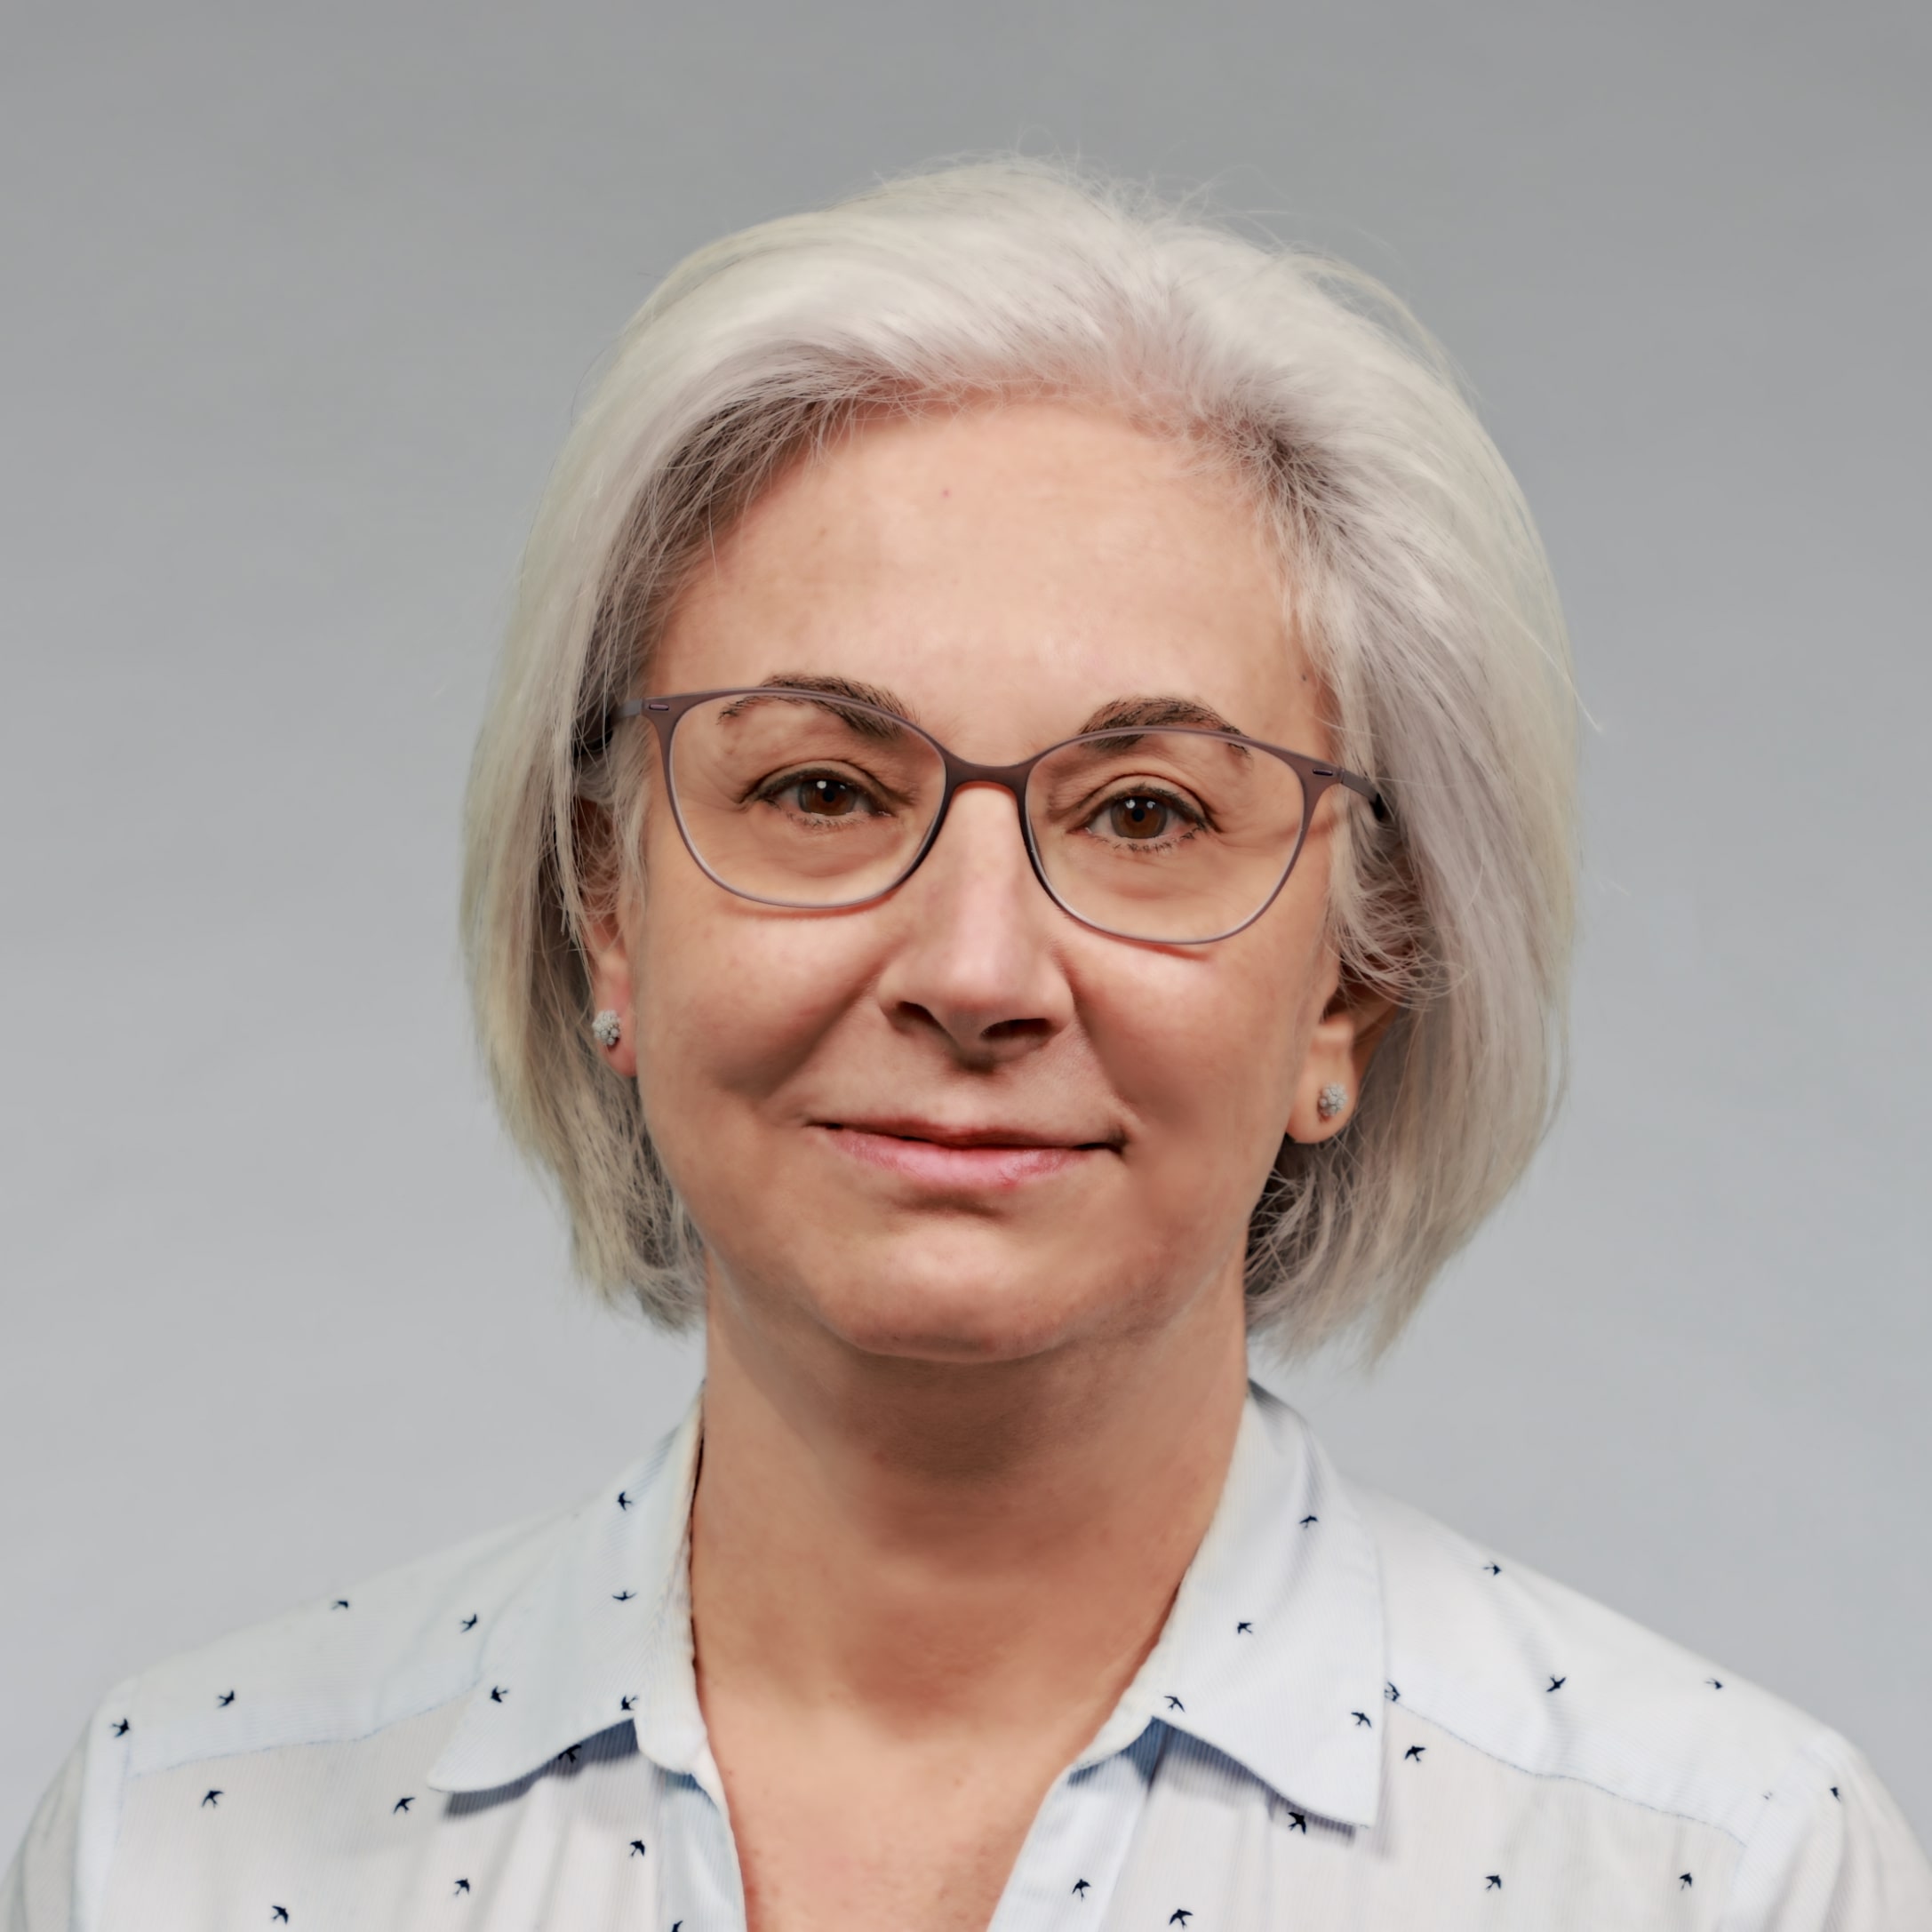 Eileen Hazboun